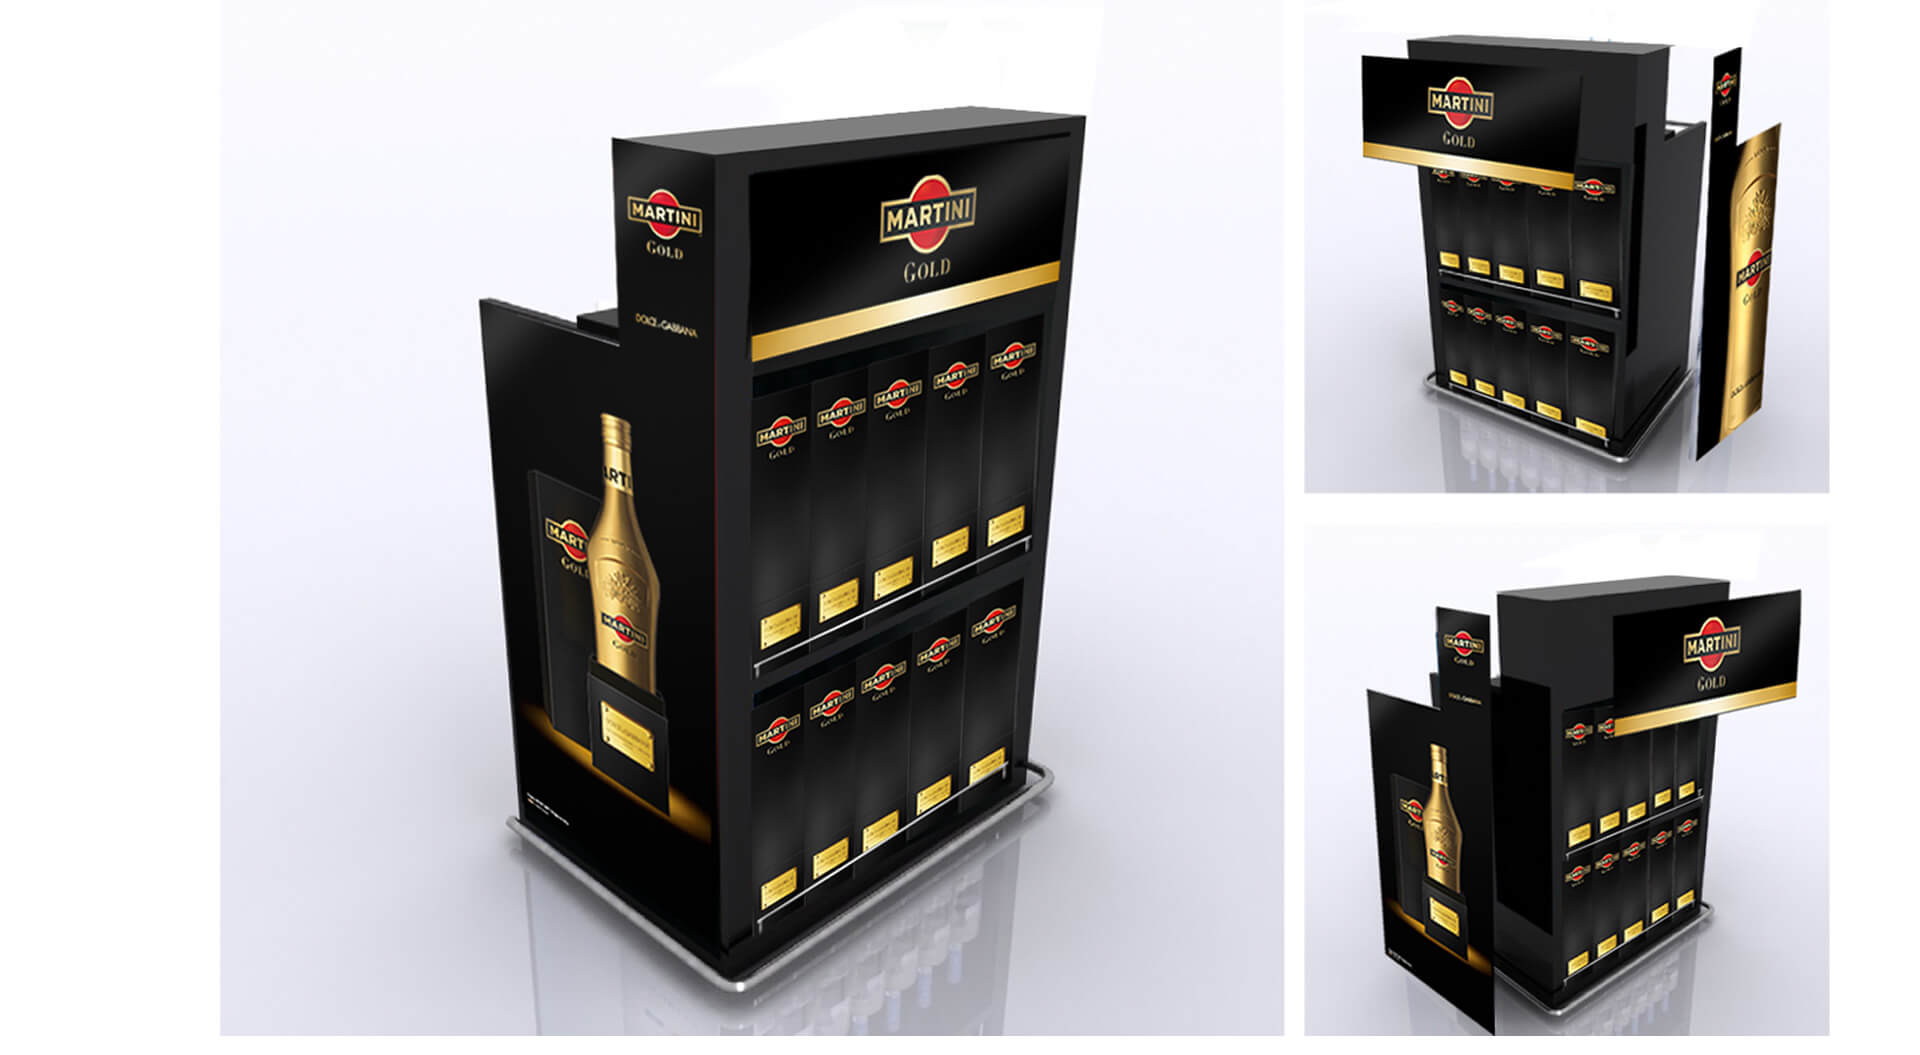 Martini Gold the new taste Dolce & Gabbana roller bar branding for Bacardi Global Travel Retail